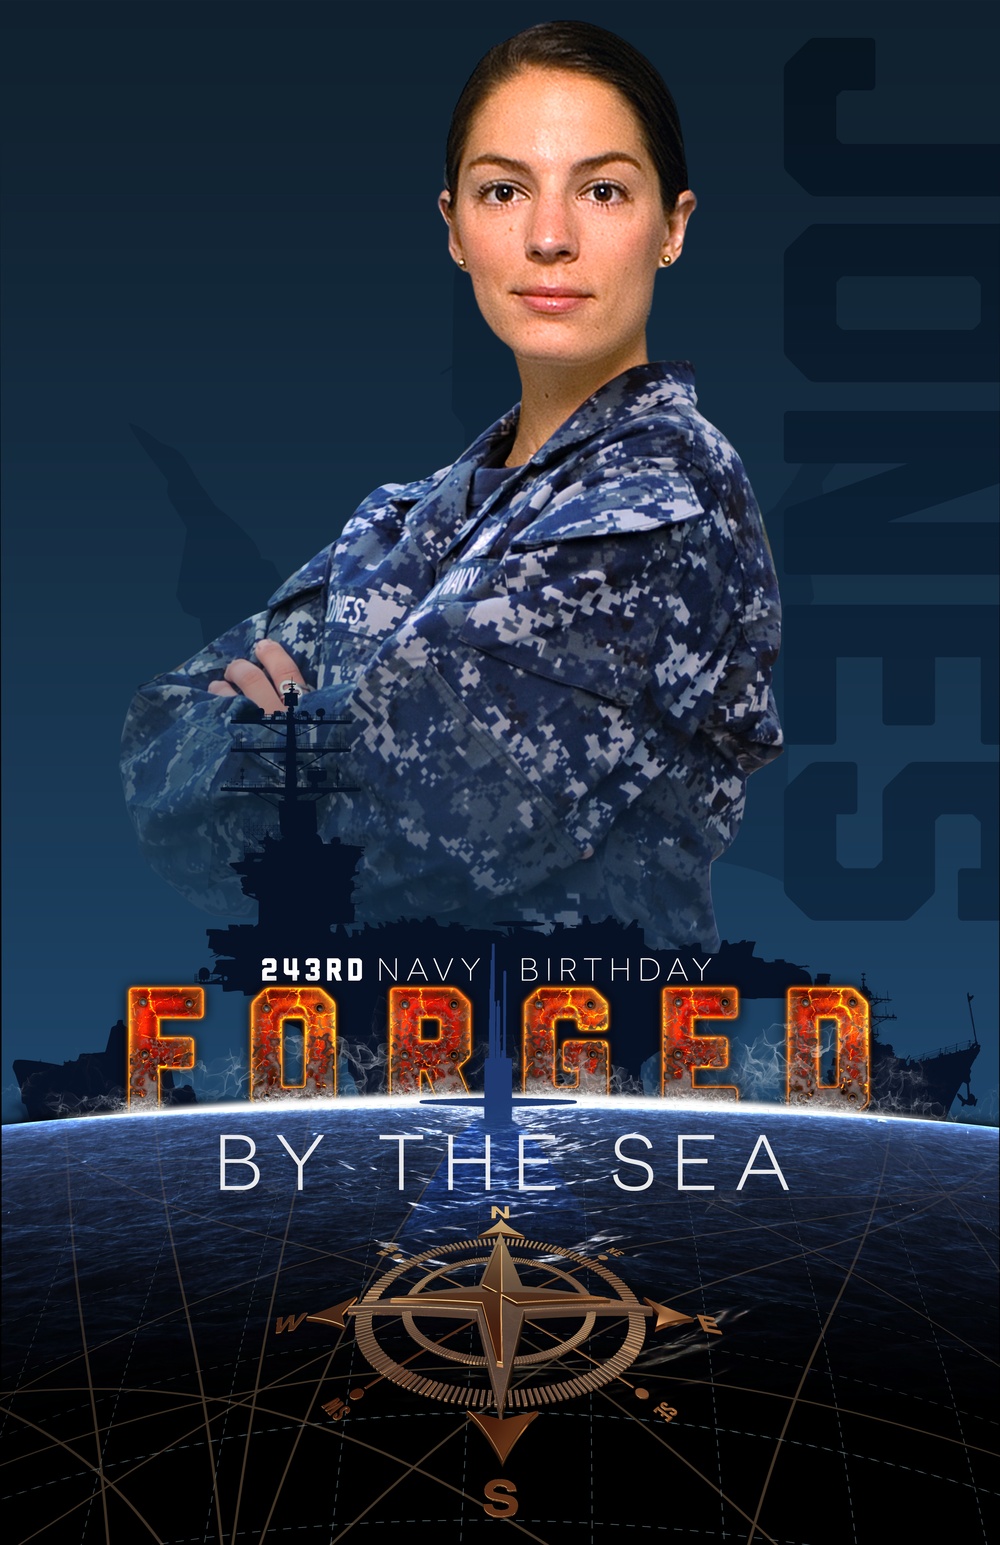 Navy 243rd Birthday - Future Sailors